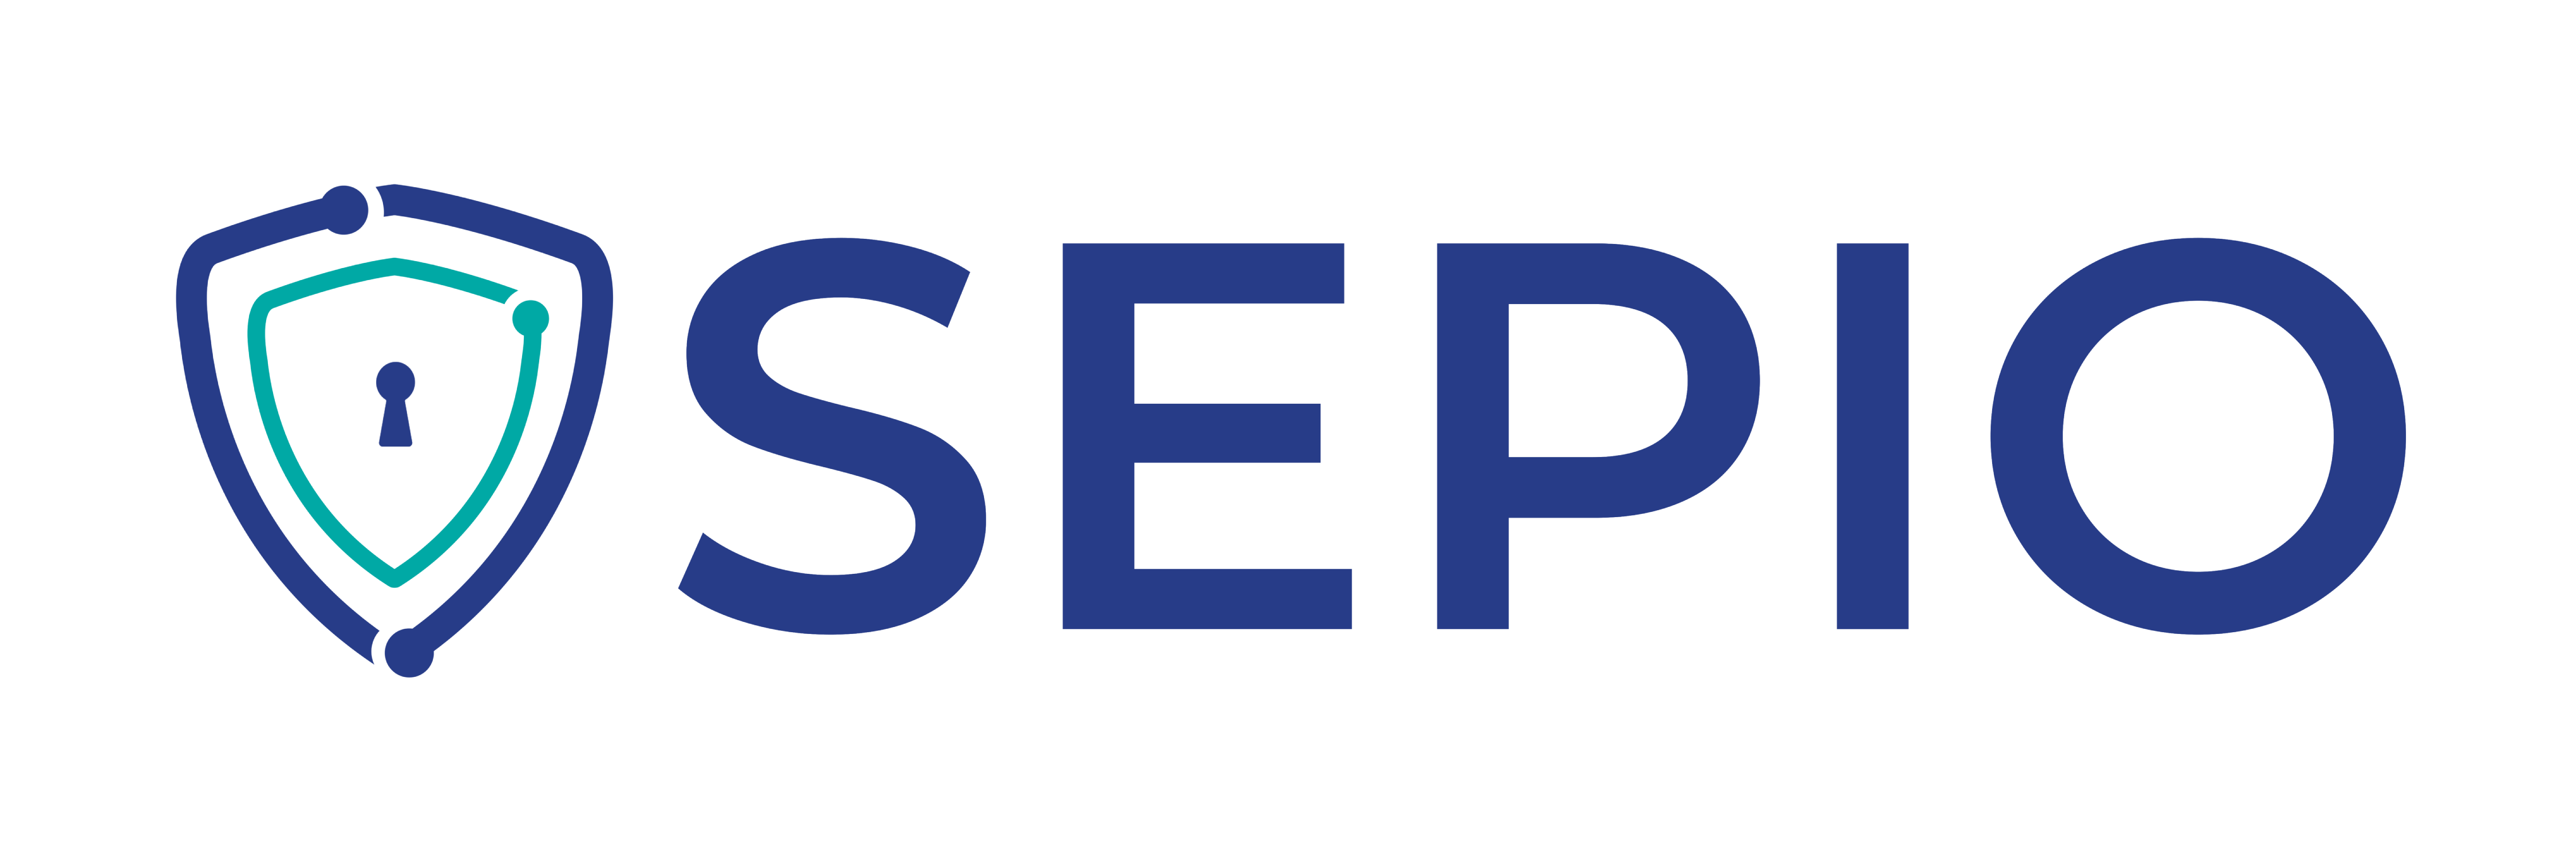 Sepio-Logo1